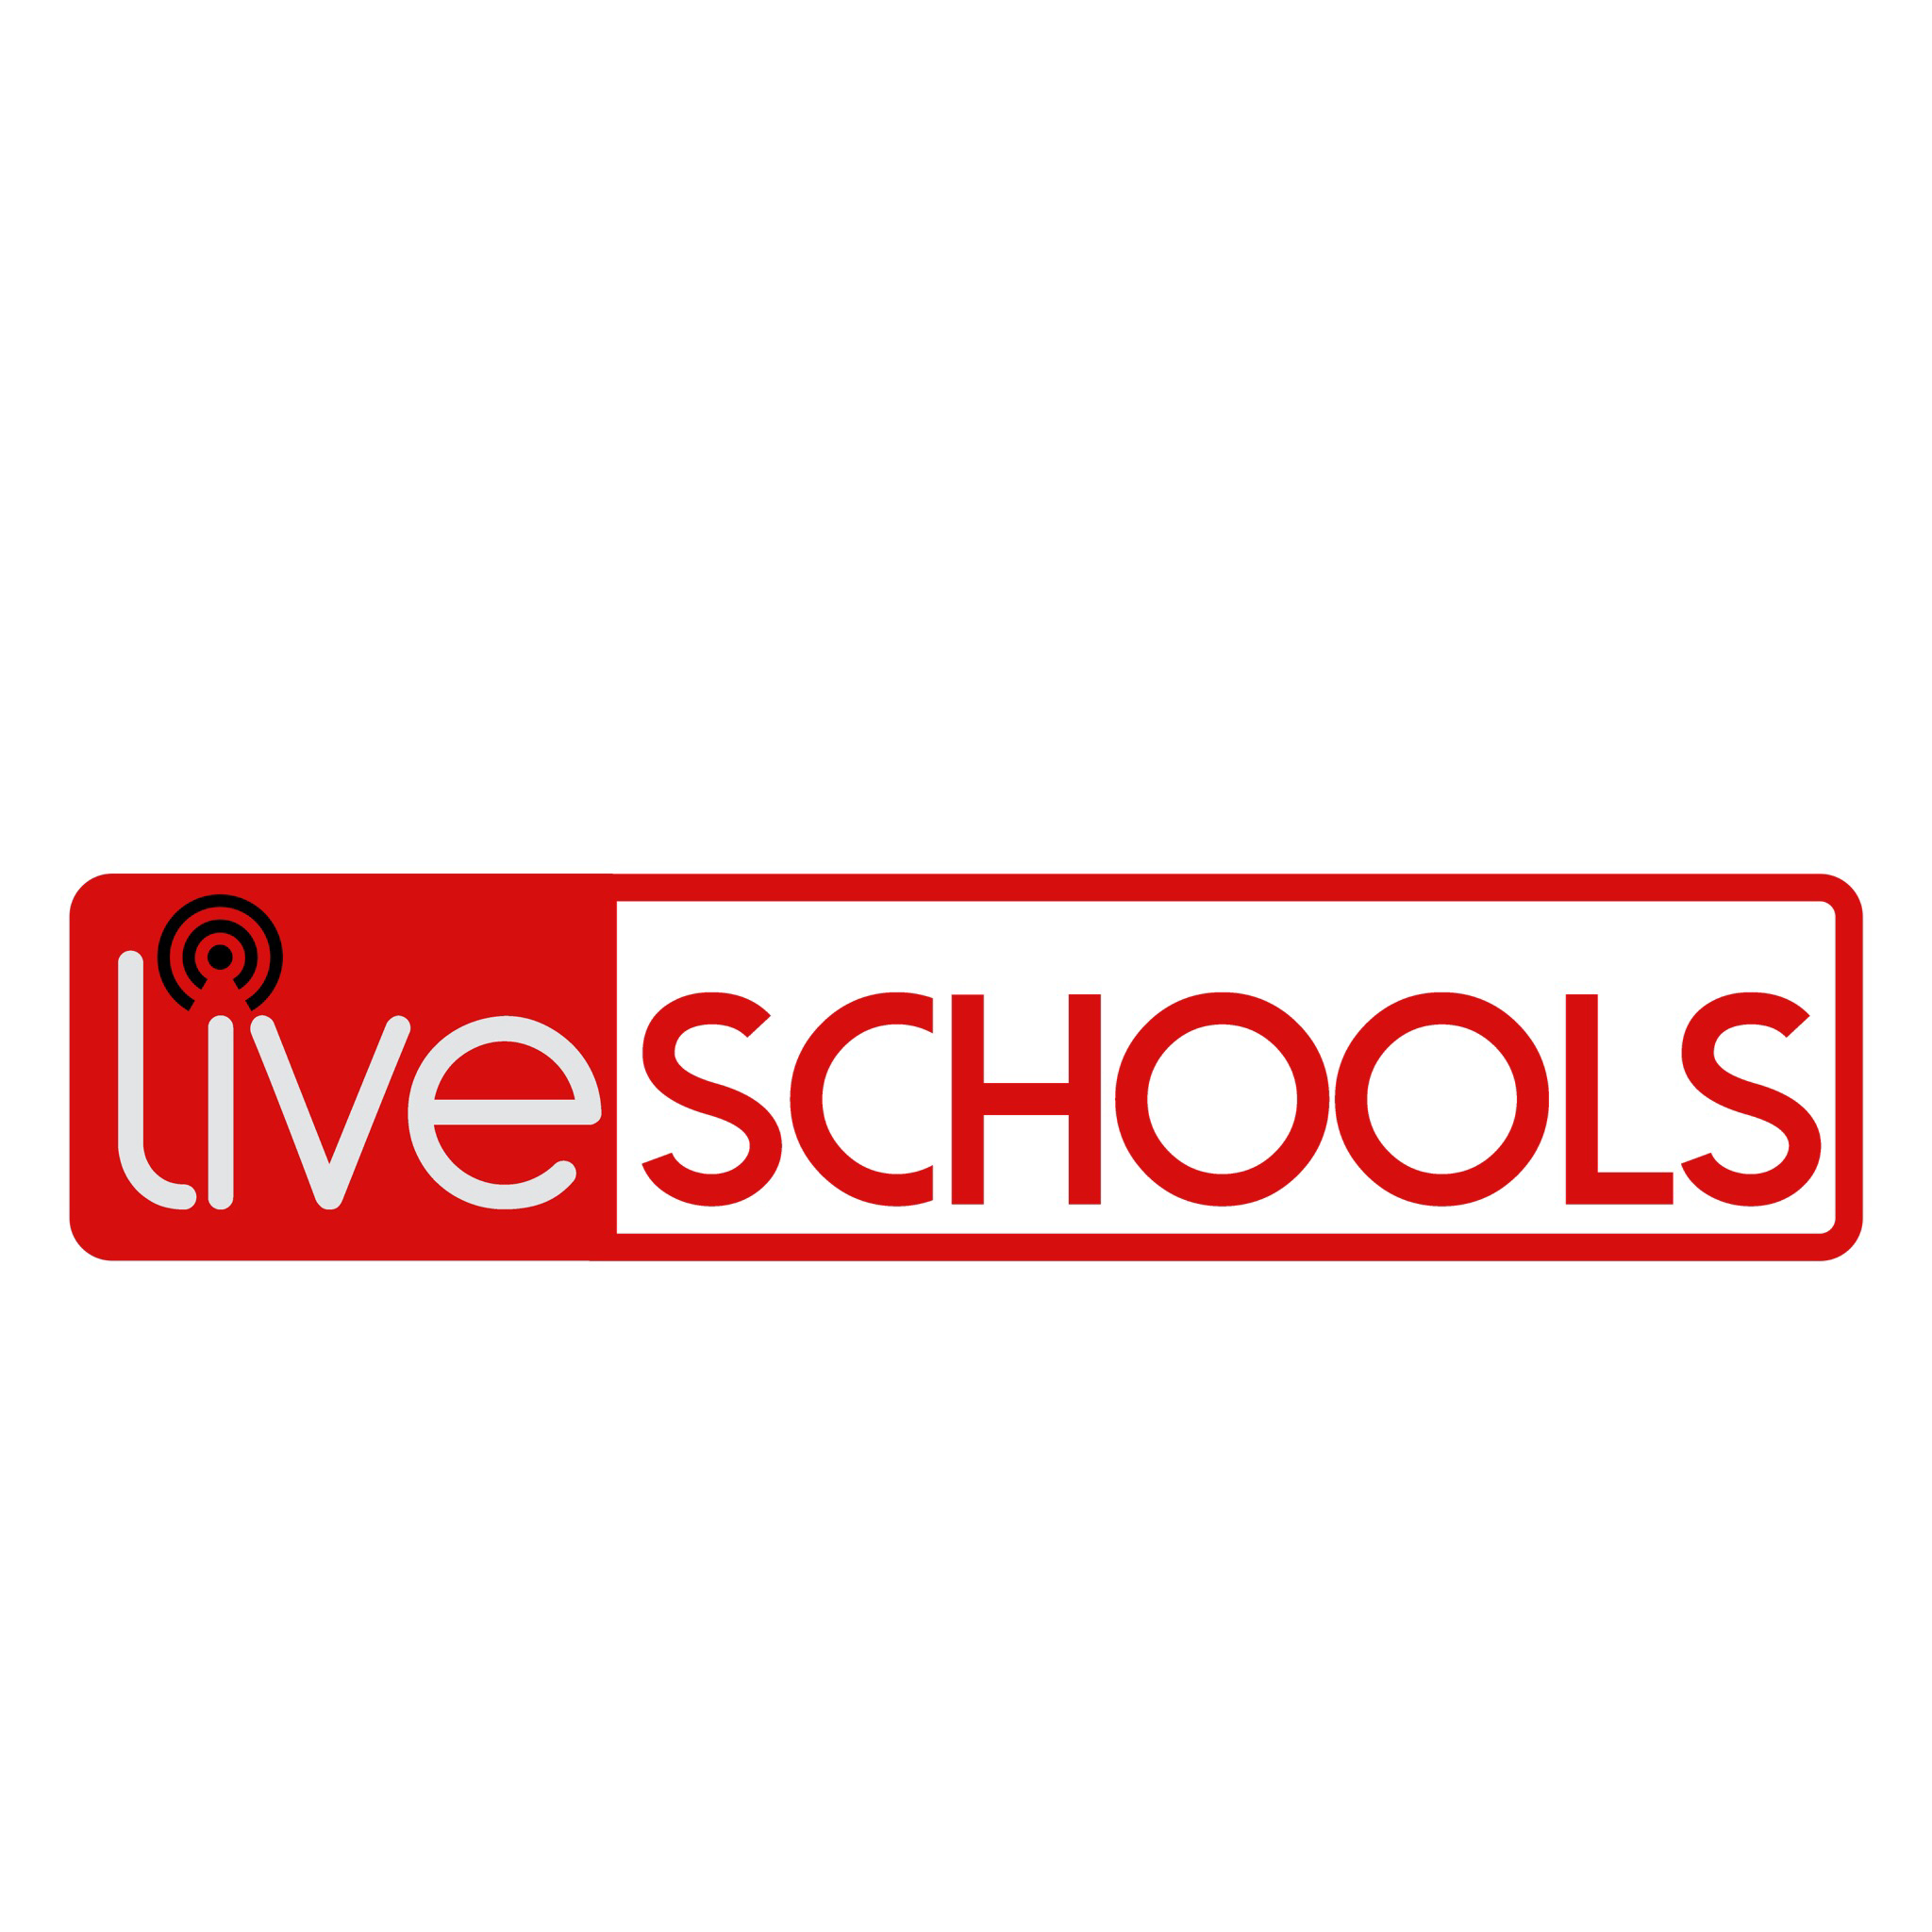 Live Schools 